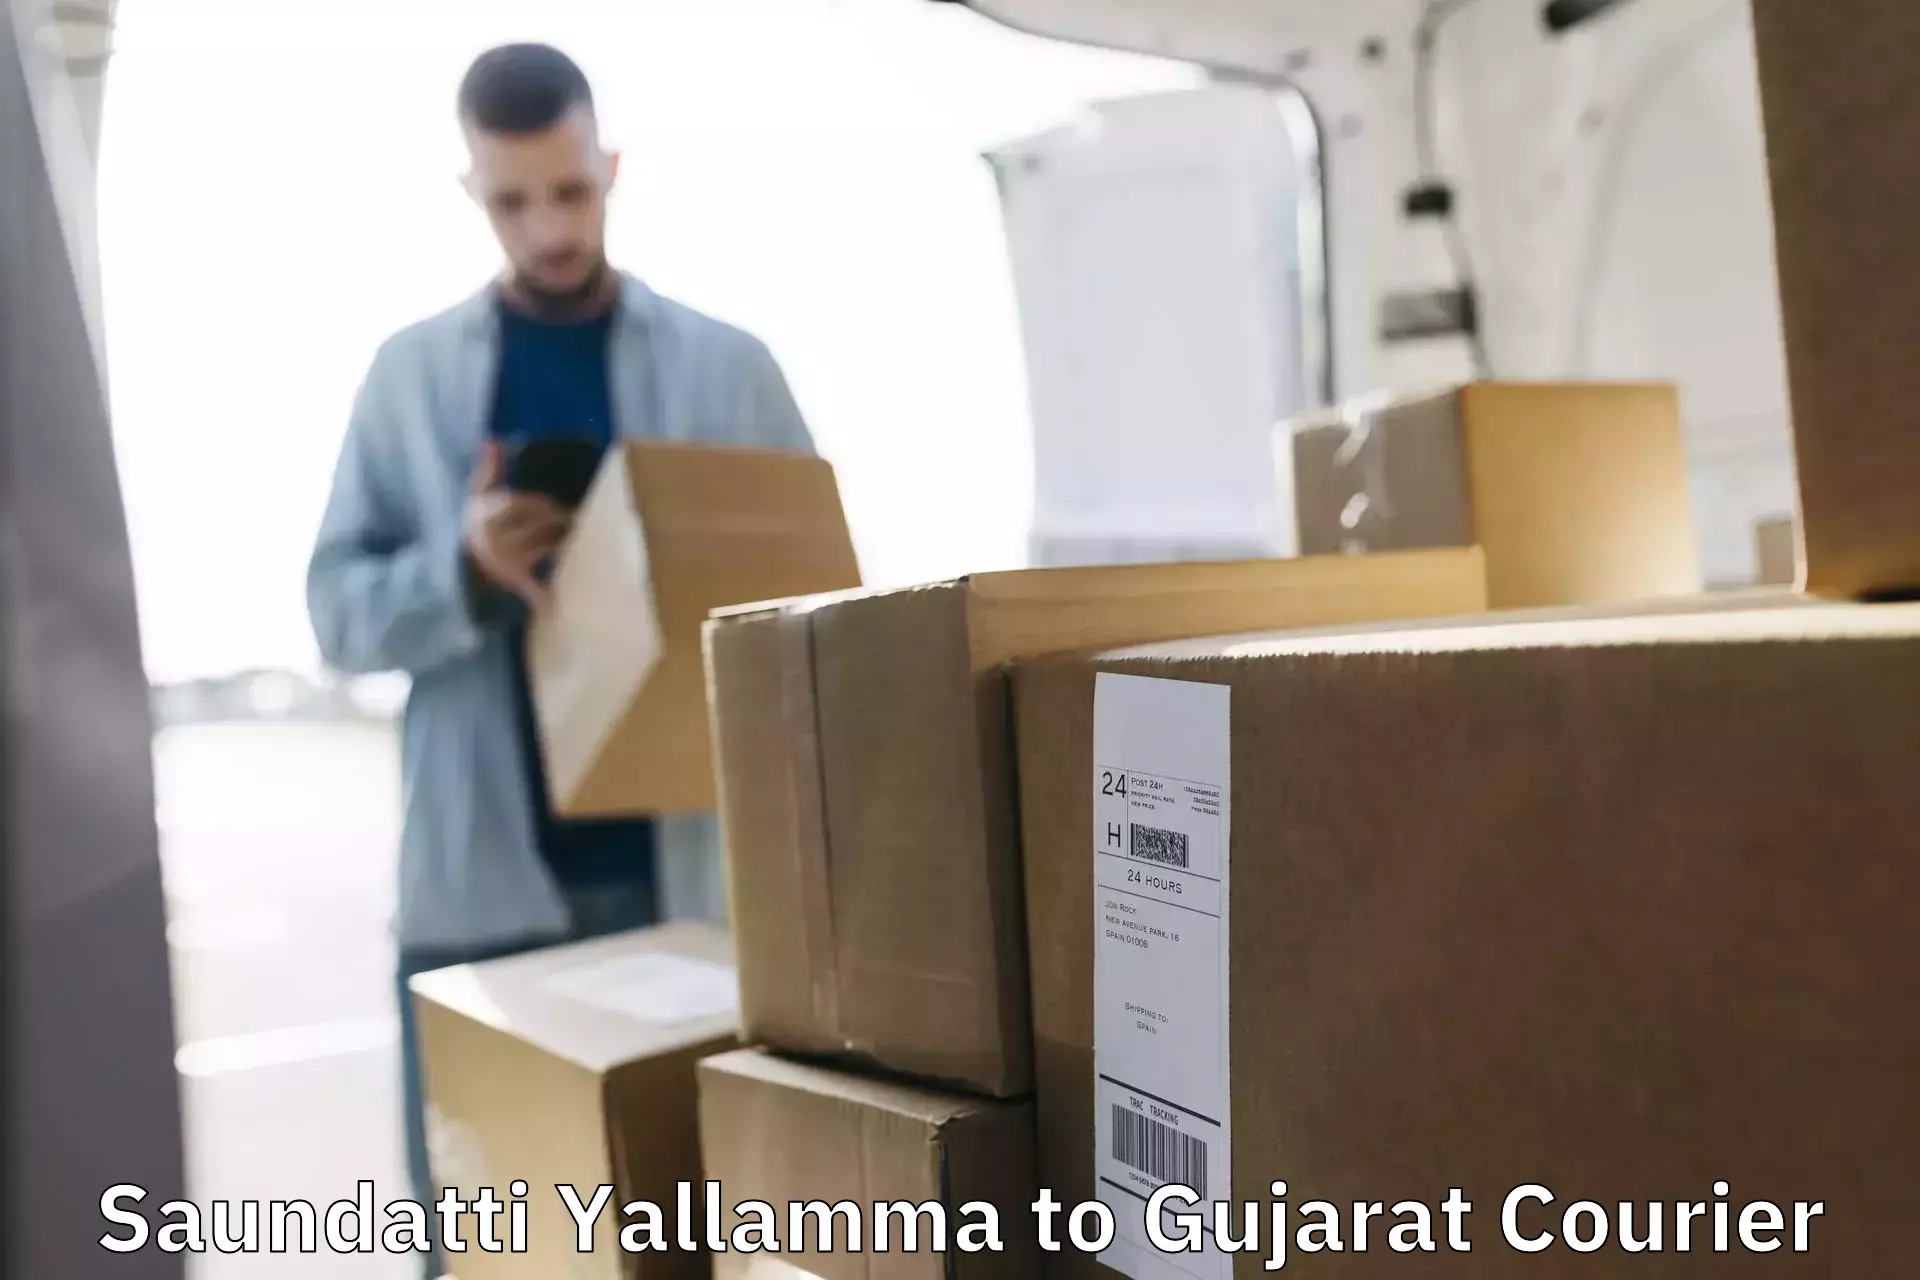 Express package delivery Saundatti Yallamma to IIT Gandhi Nagar